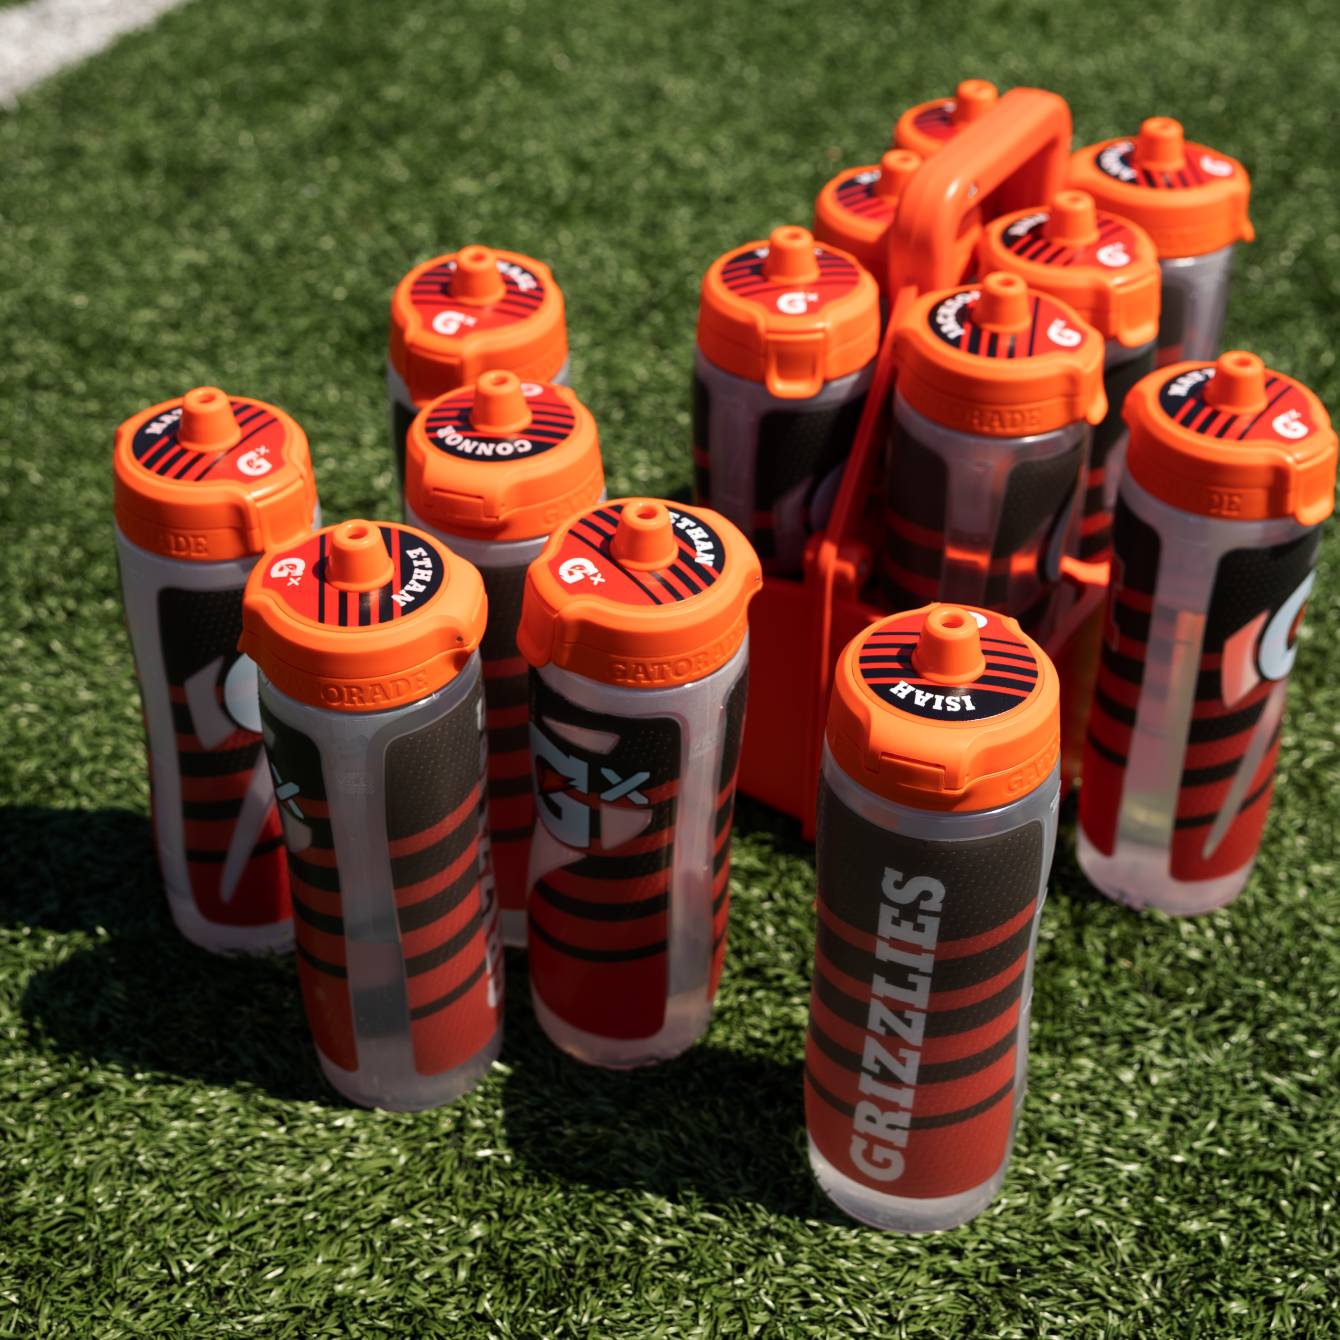 Social share image of custom team Gx bottles on a football field.